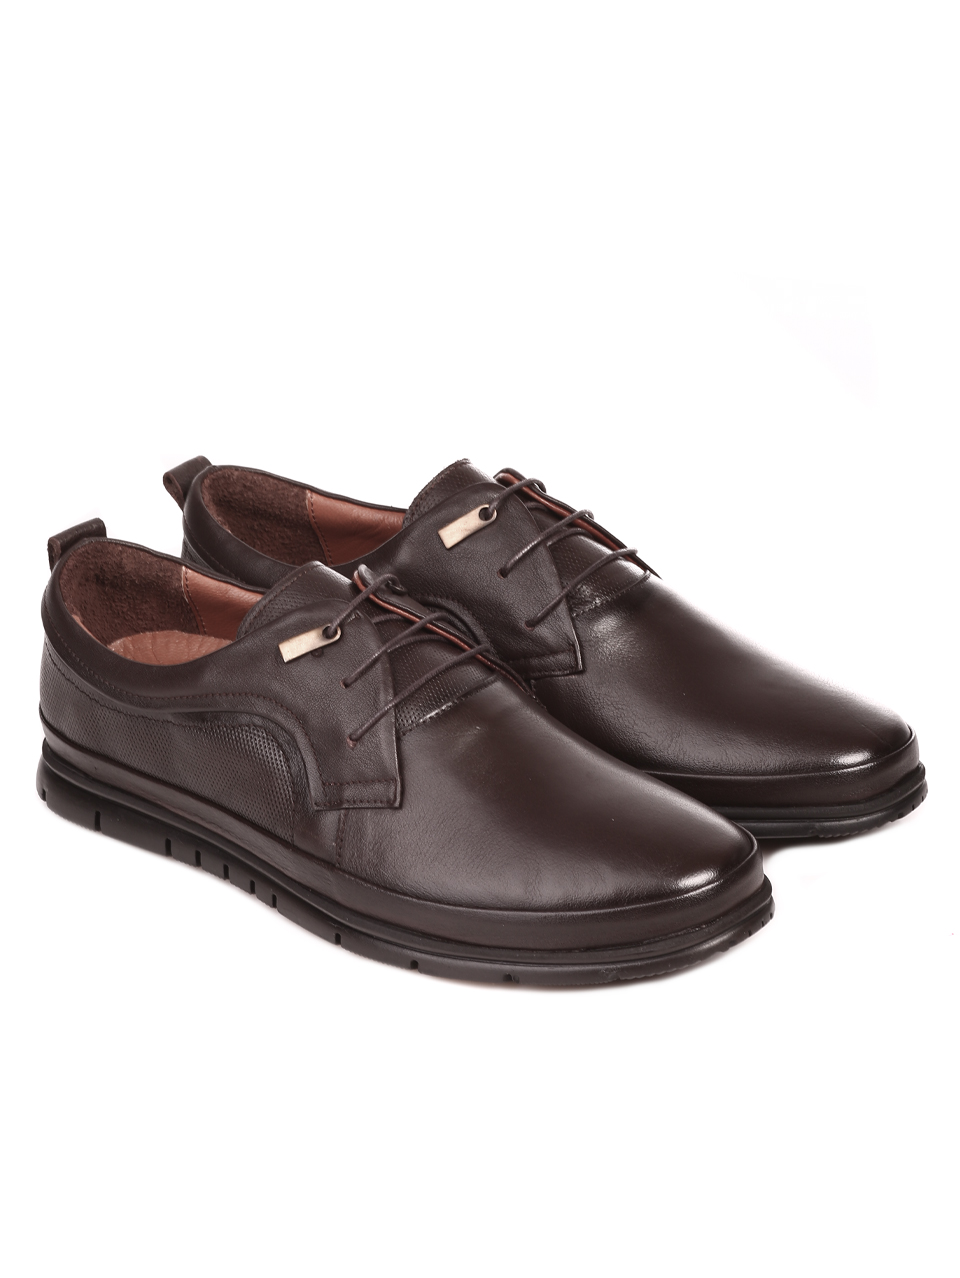 Мъжки обувки от естествена кожа в кафяво 5791 K-1 (5277) brown